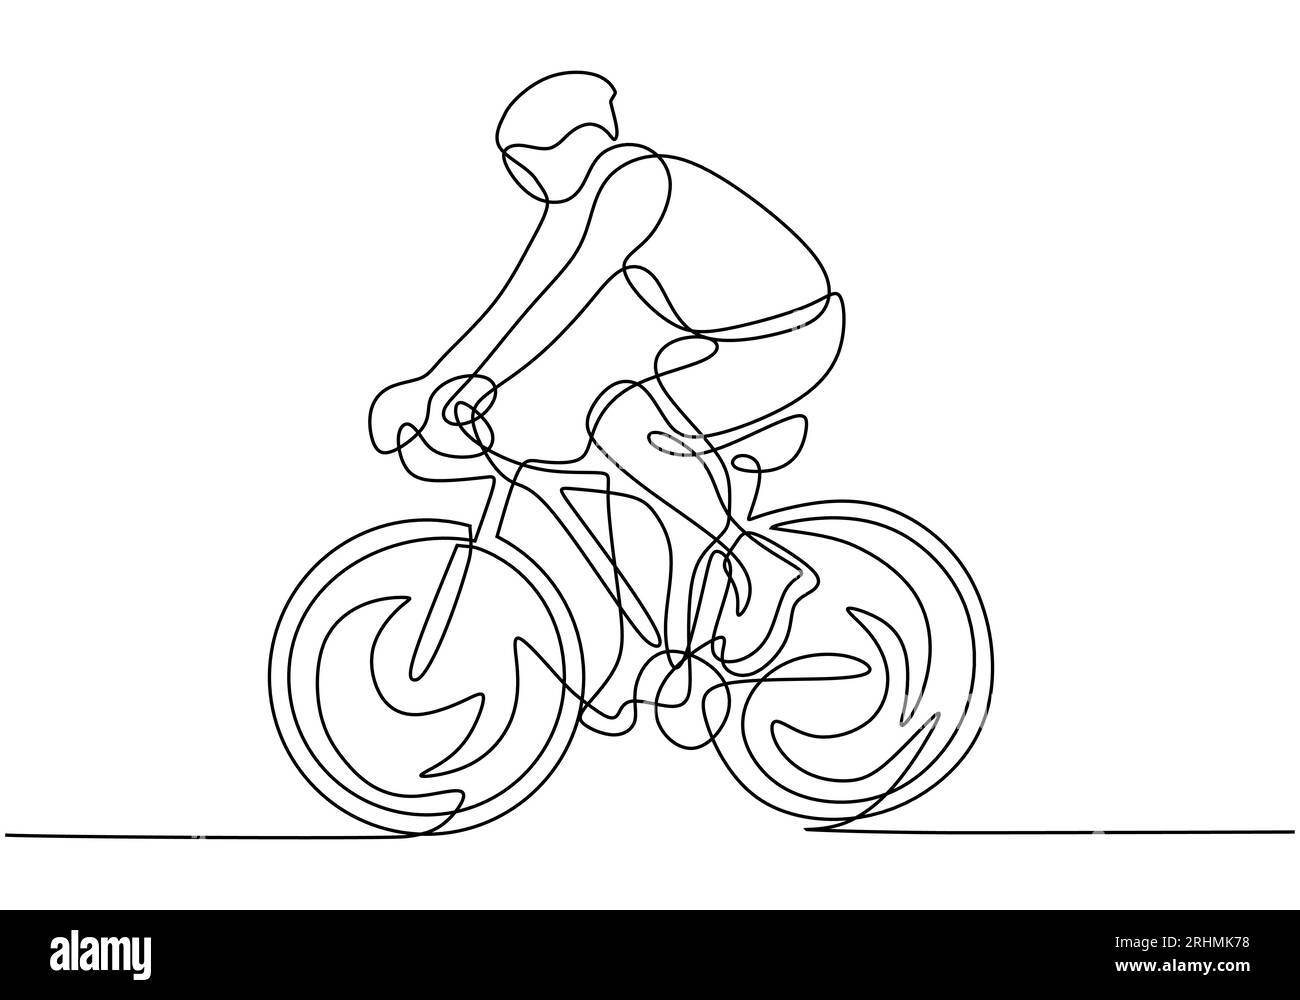 Radfahrer mit einem Helm, der auf dem Fahrrad fährt. Minimalistische Designzeichnung eines Sportlers, der Sport spielt. Stock Vektor